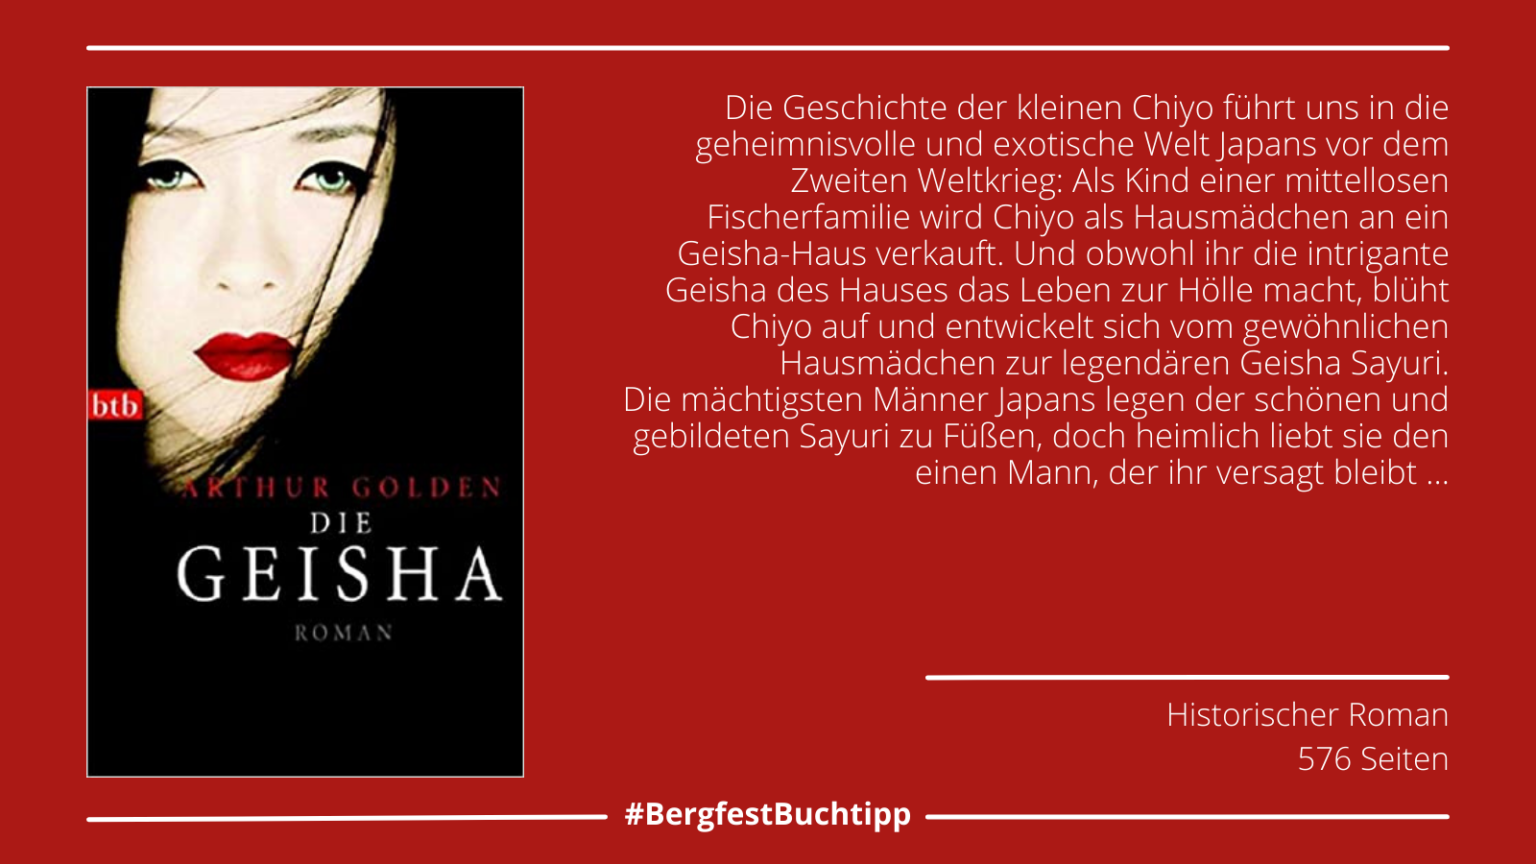 Woche 24: "Die Geisha" von Arthur Golden